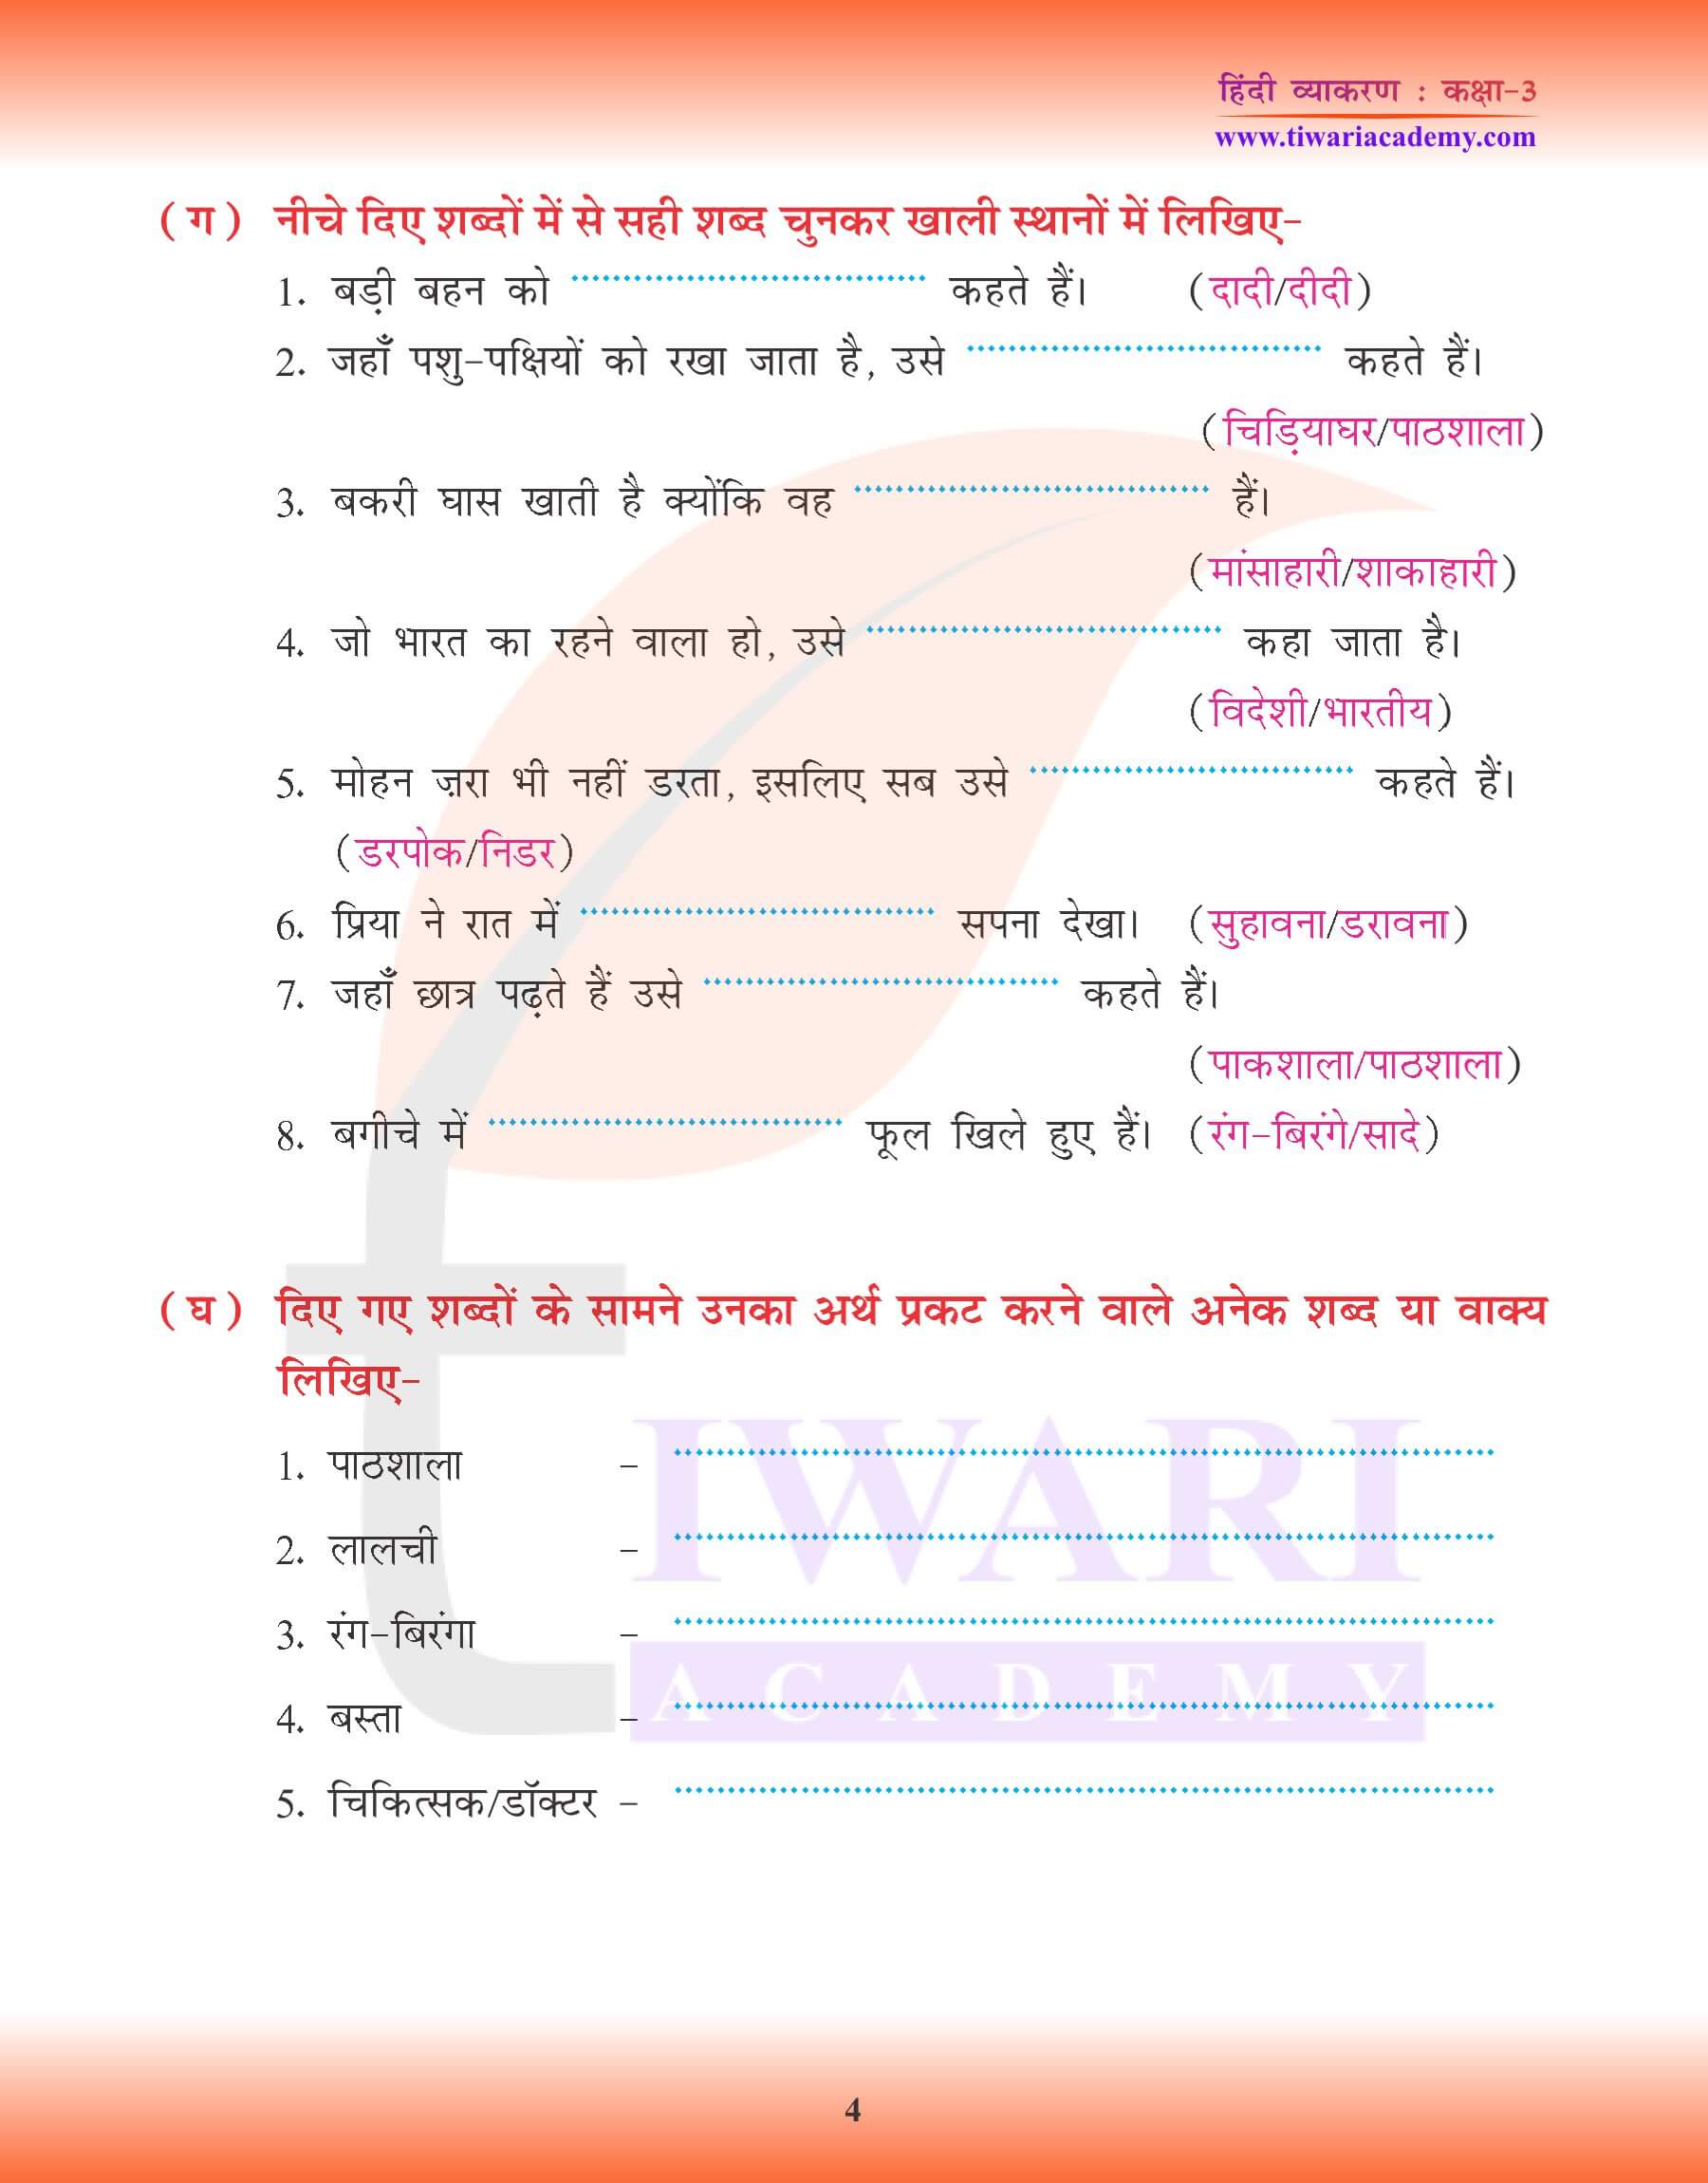 कक्षा 3 हिंदी व्याकरण अनेक के लिए एक शब्द